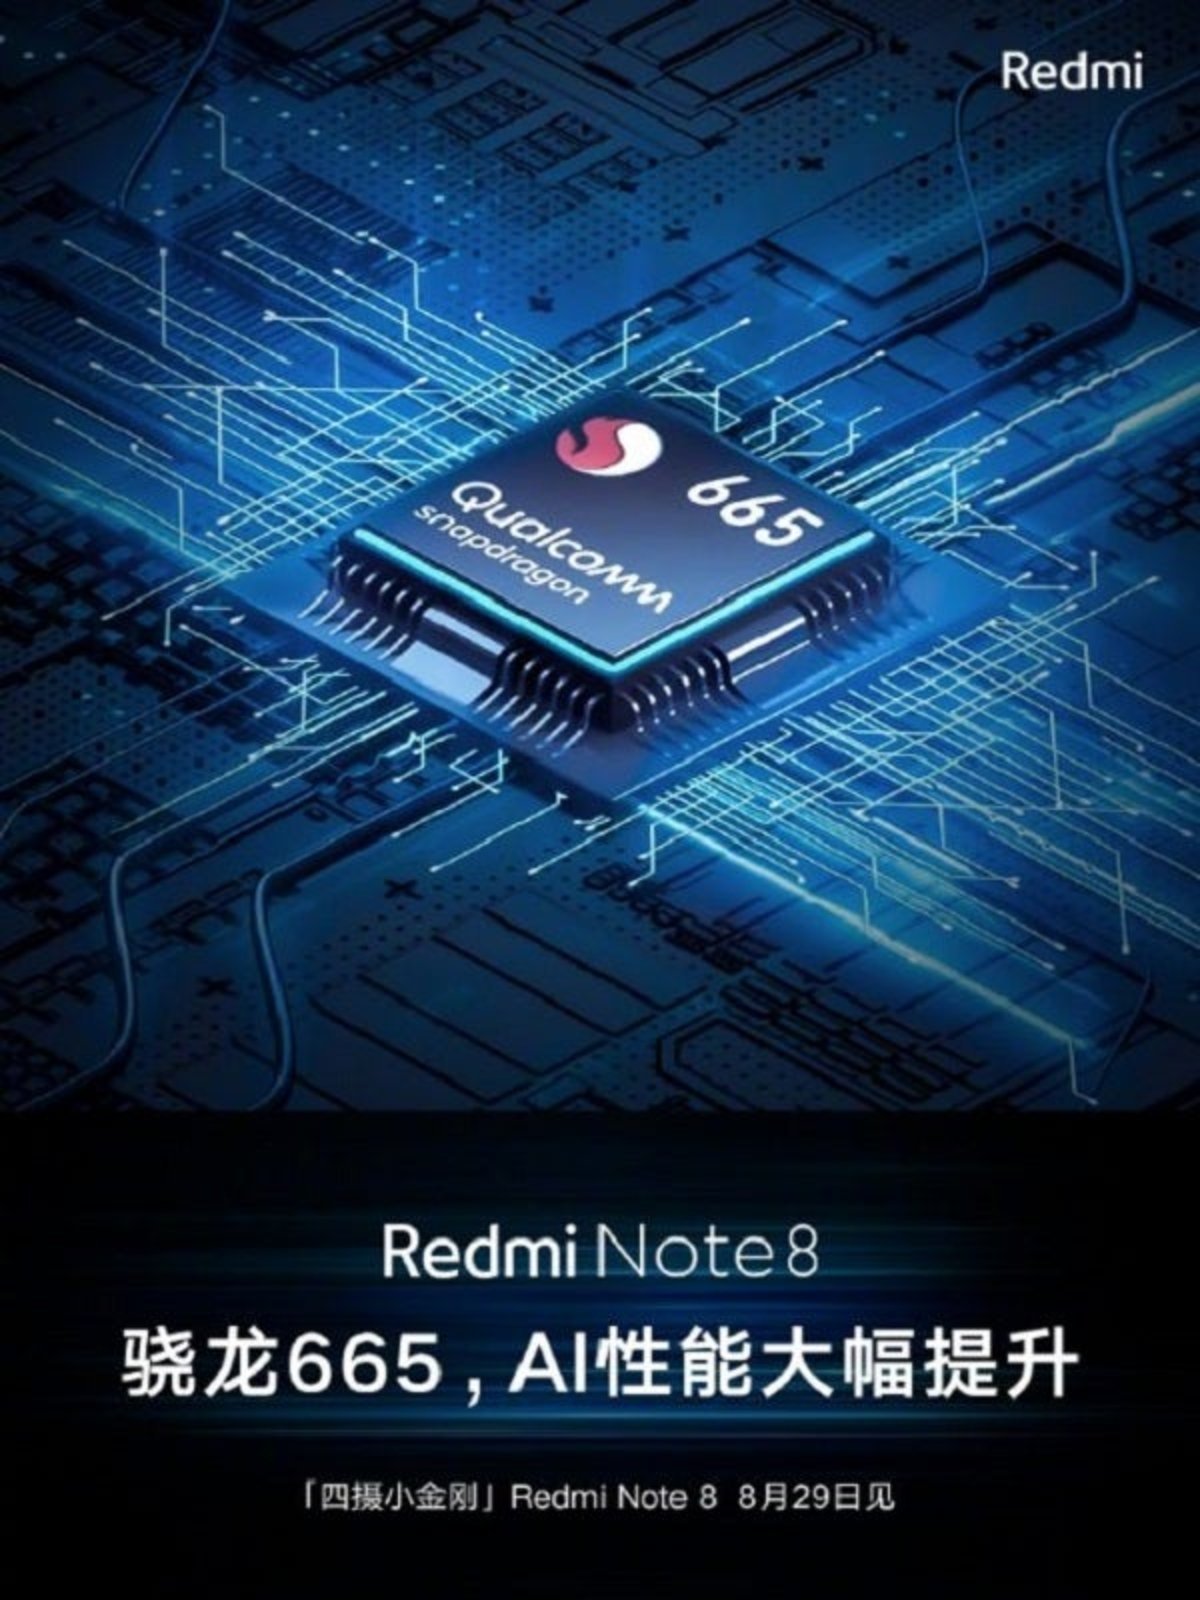 Redmi Note 8 contará con procesador Snapdragon 665